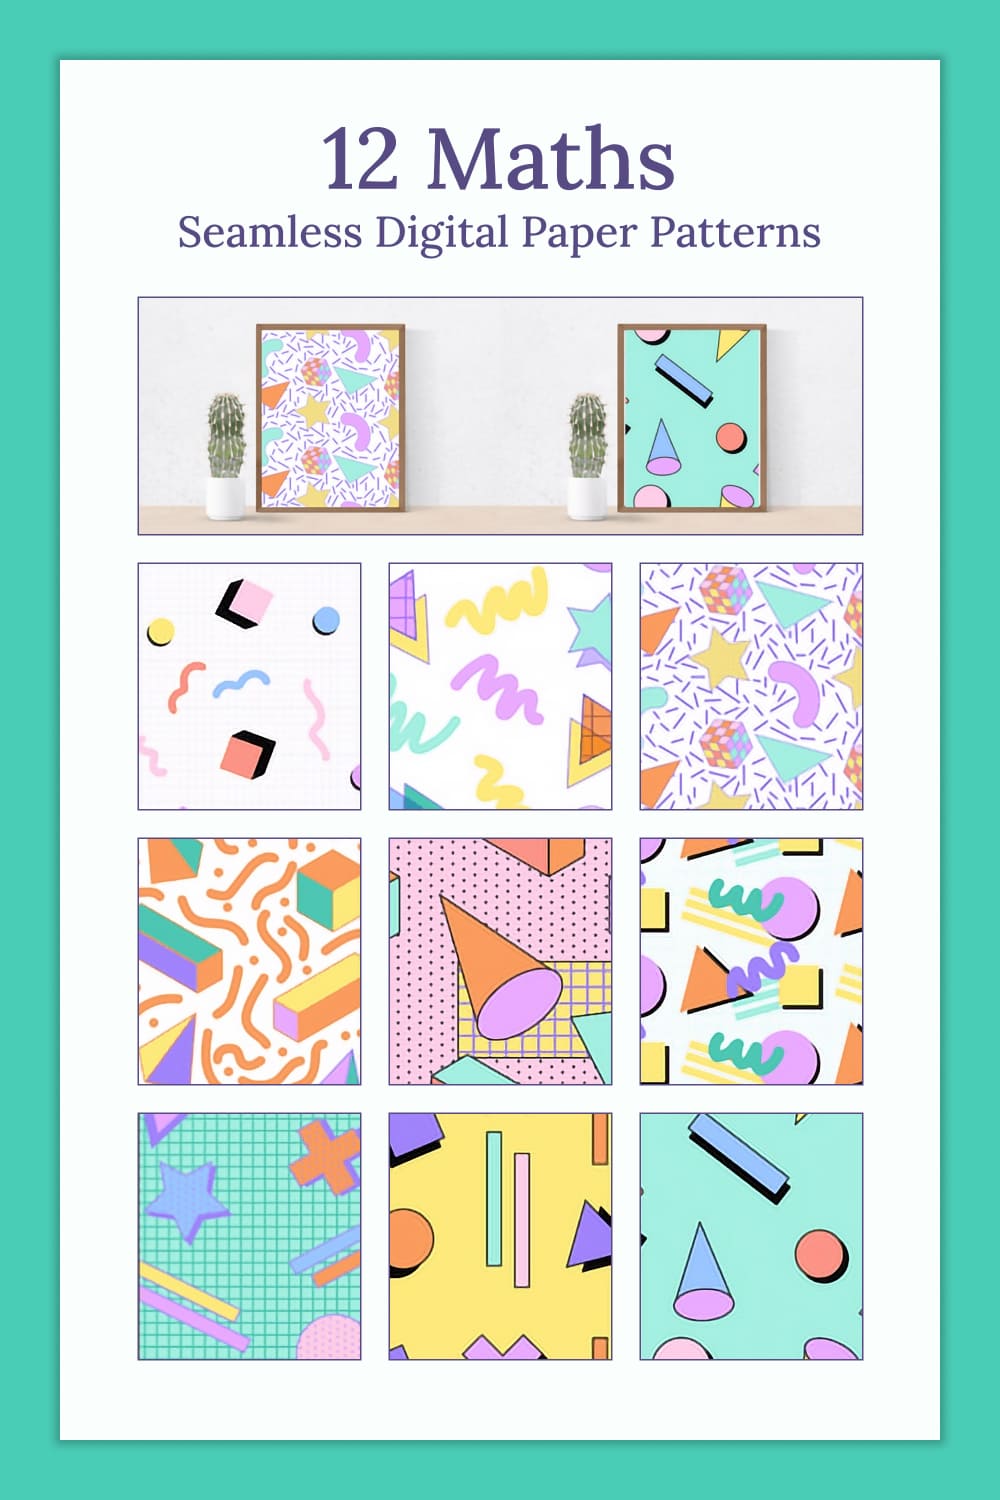 12 Maths Seamless Digital Paper Patterns - Pinterest.